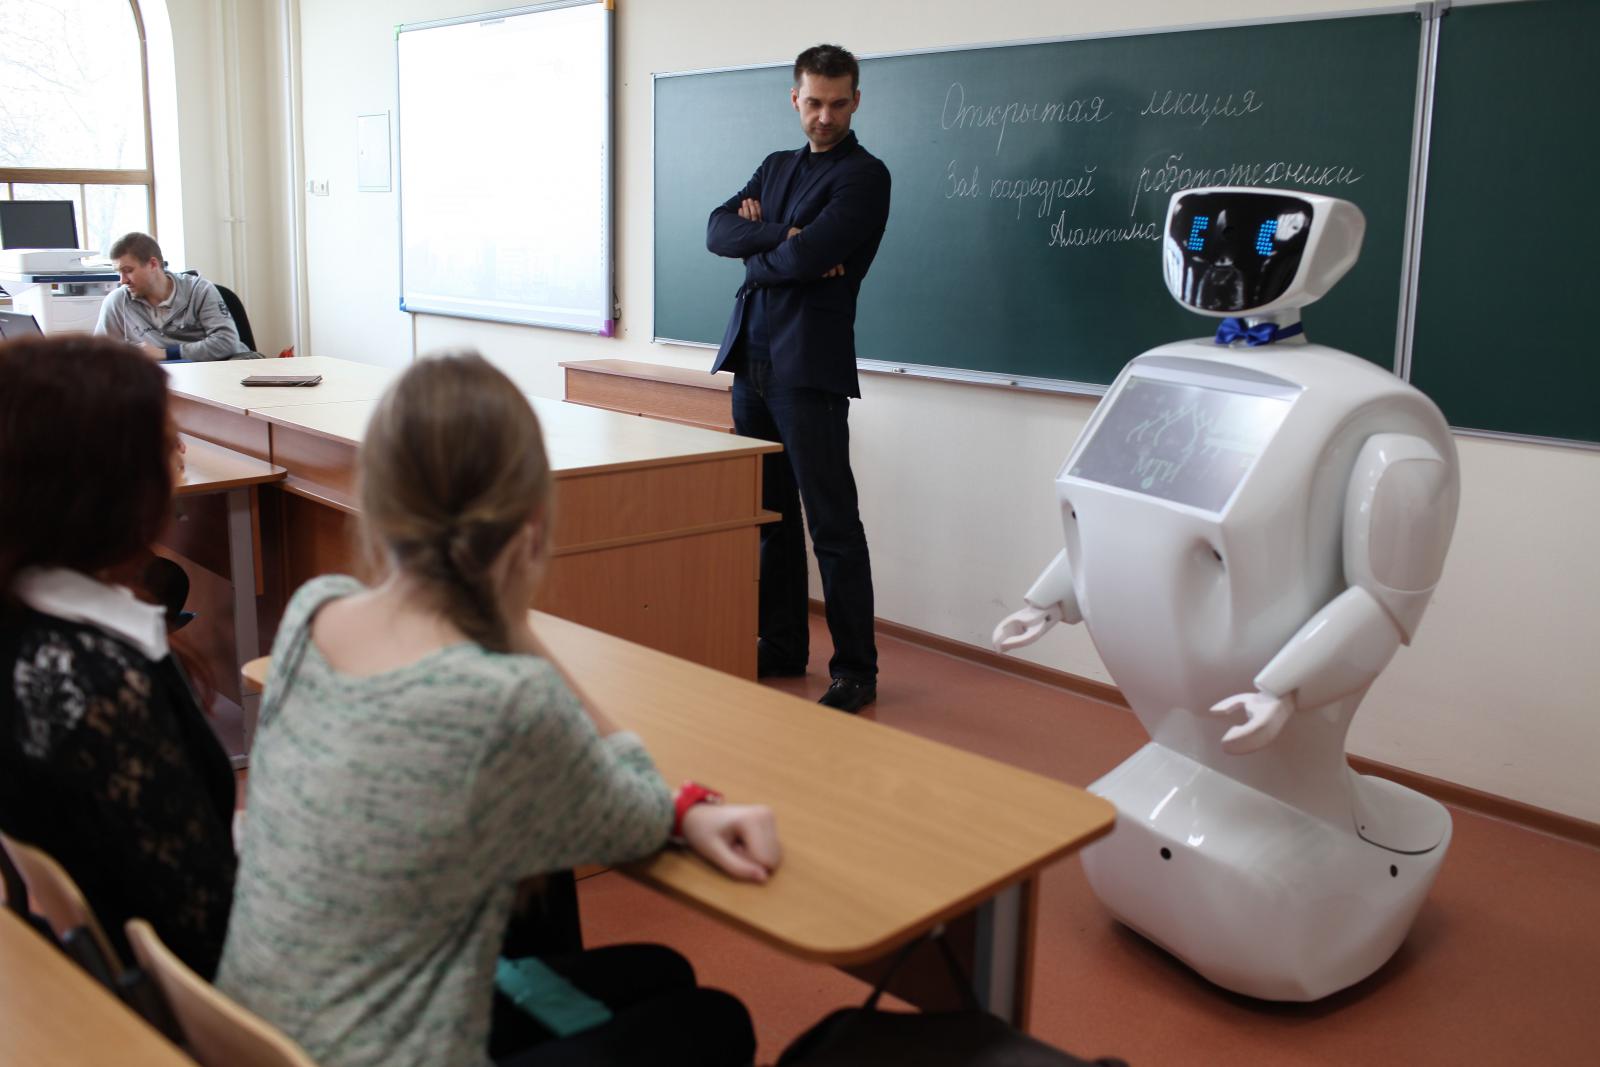 Интеллект преподавателя. Учитель робот в школе. Учитель в будущем. Школа будущего учителя роботы. Робот учитель образование.